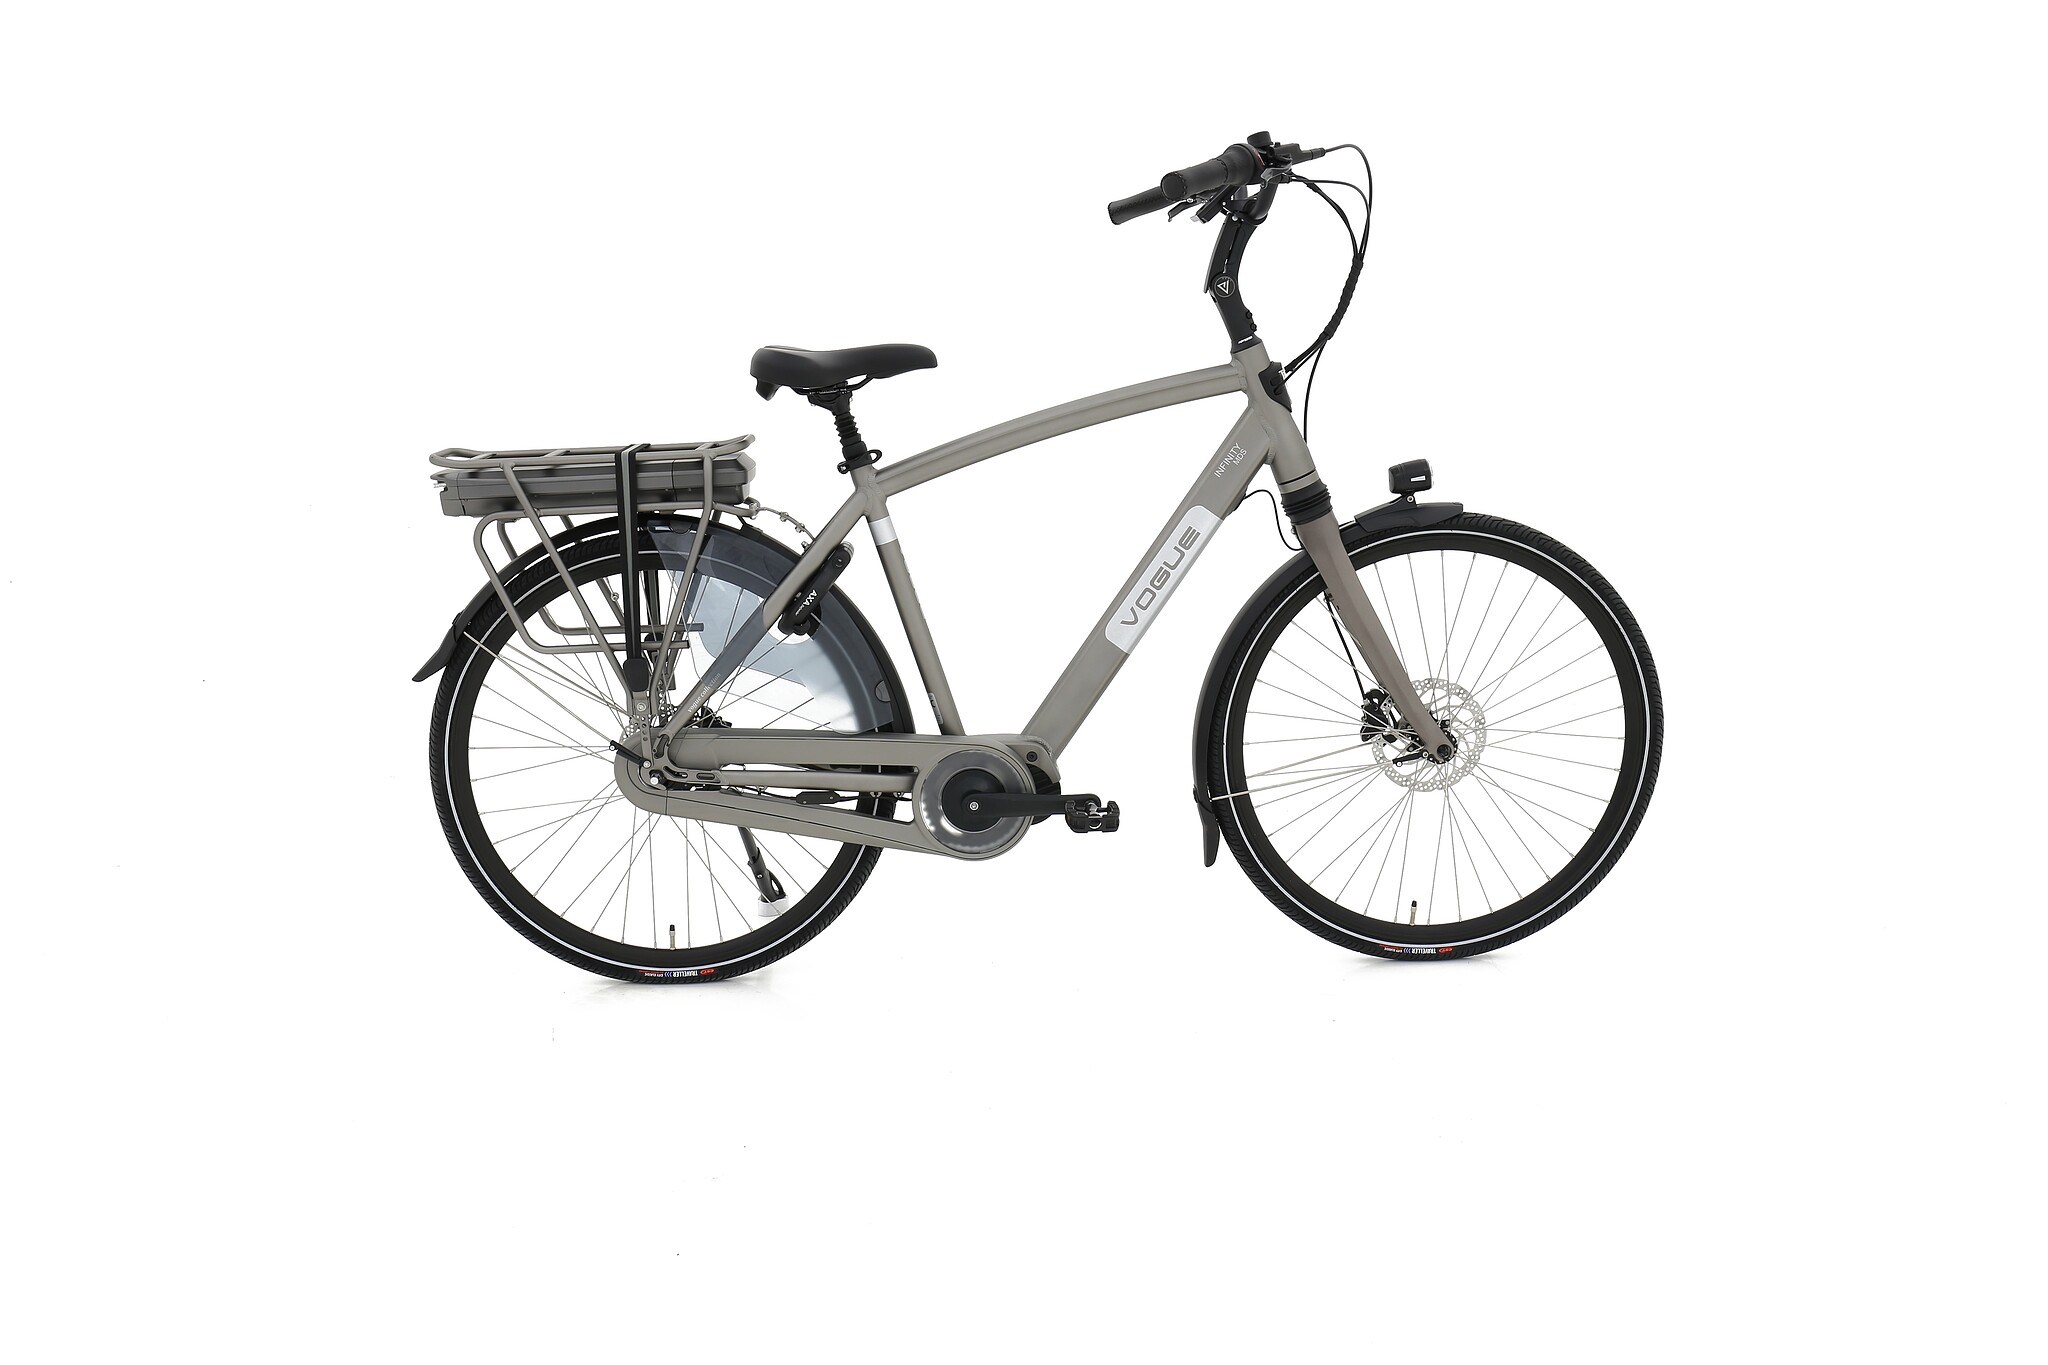 Vogue Elektrische fiets Infinity M300 Heren 53 cm Grijs 468 Wh Grijs